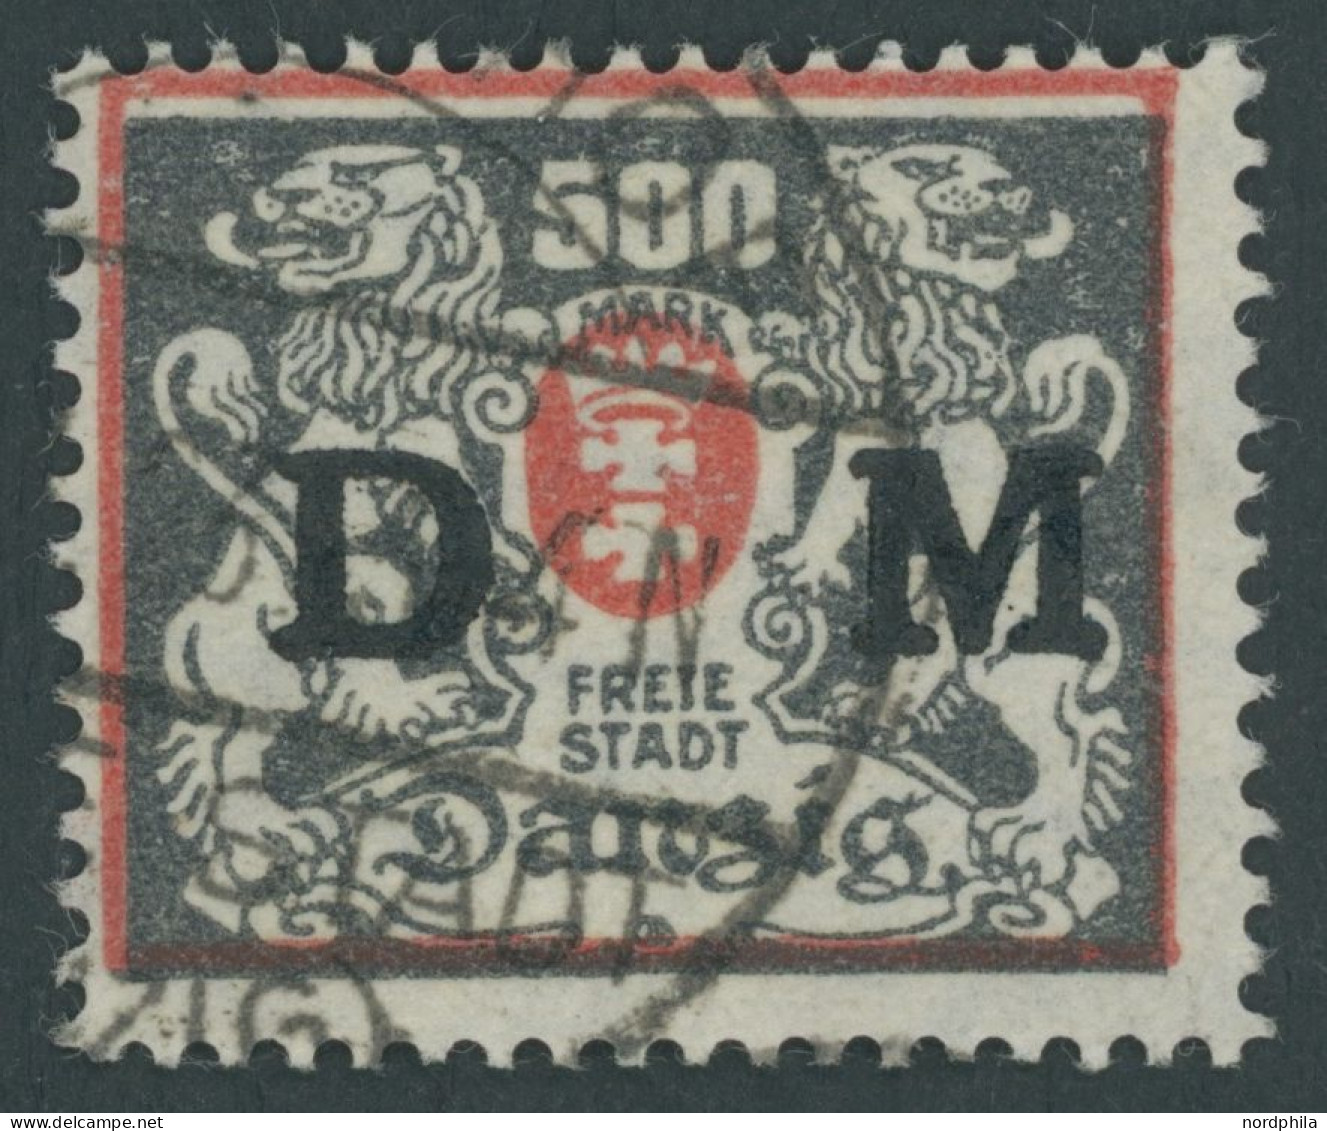 DIENSTMARKEN D 39 O, 1923, 500 M. Rot/schwärzlichgraugrün, Zeitgerechte Entwertung (TIEGEN)HOF, Pracht, Fotoattest Grube - Dienstmarken